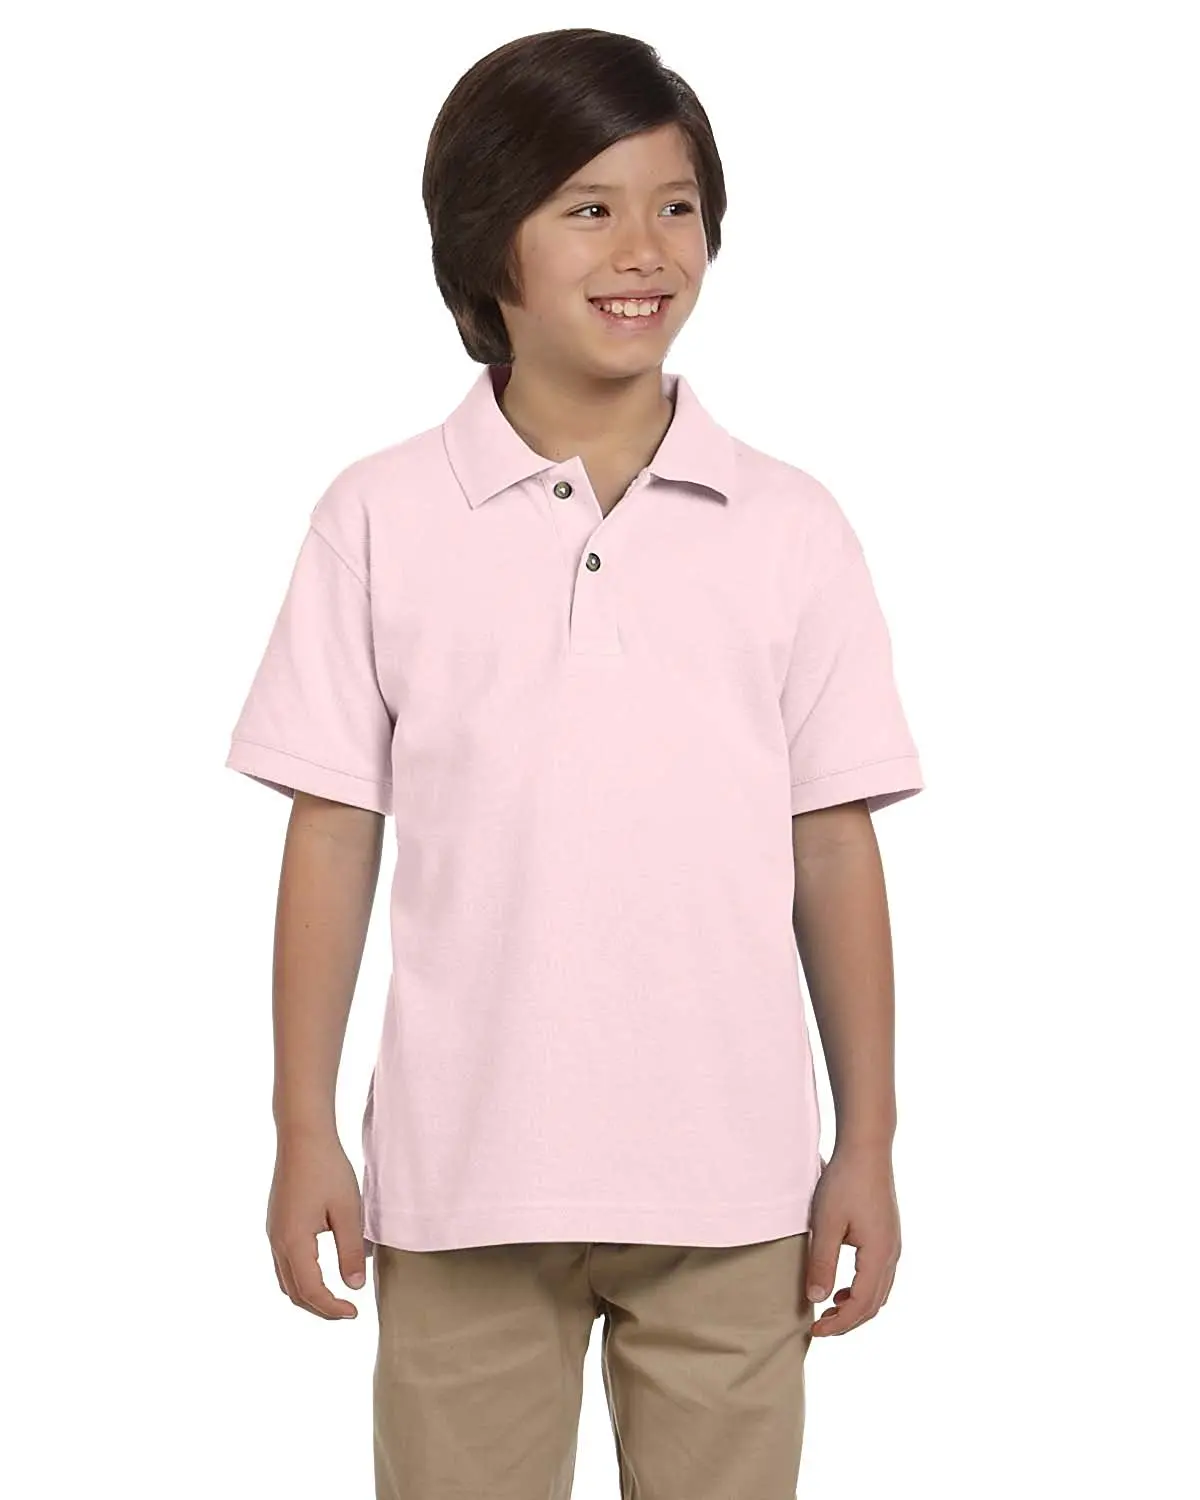 Boys polo. Polo Shirt boy. Школьная форма с рубашкой поло. Navy short Sleeve Polo Shirt Kids. Рубашка поло для подростка с чем носить.